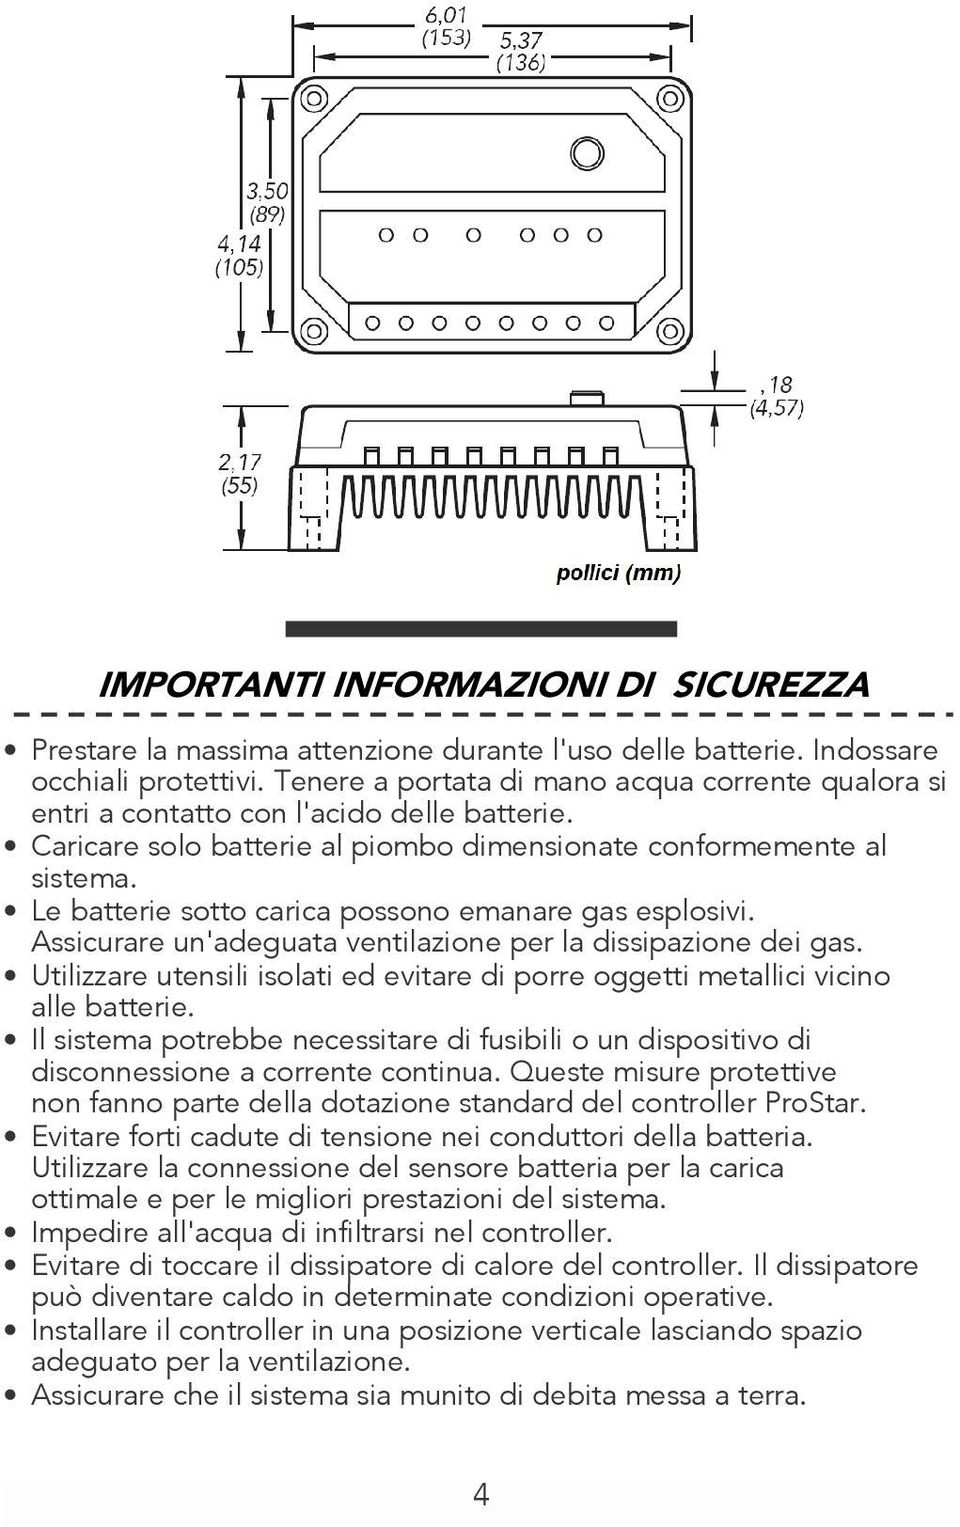 Le batterie sotto carica possono emanare gas esplosivi. Assicurare un'adeguata ventilazione per la dissipazione dei gas.